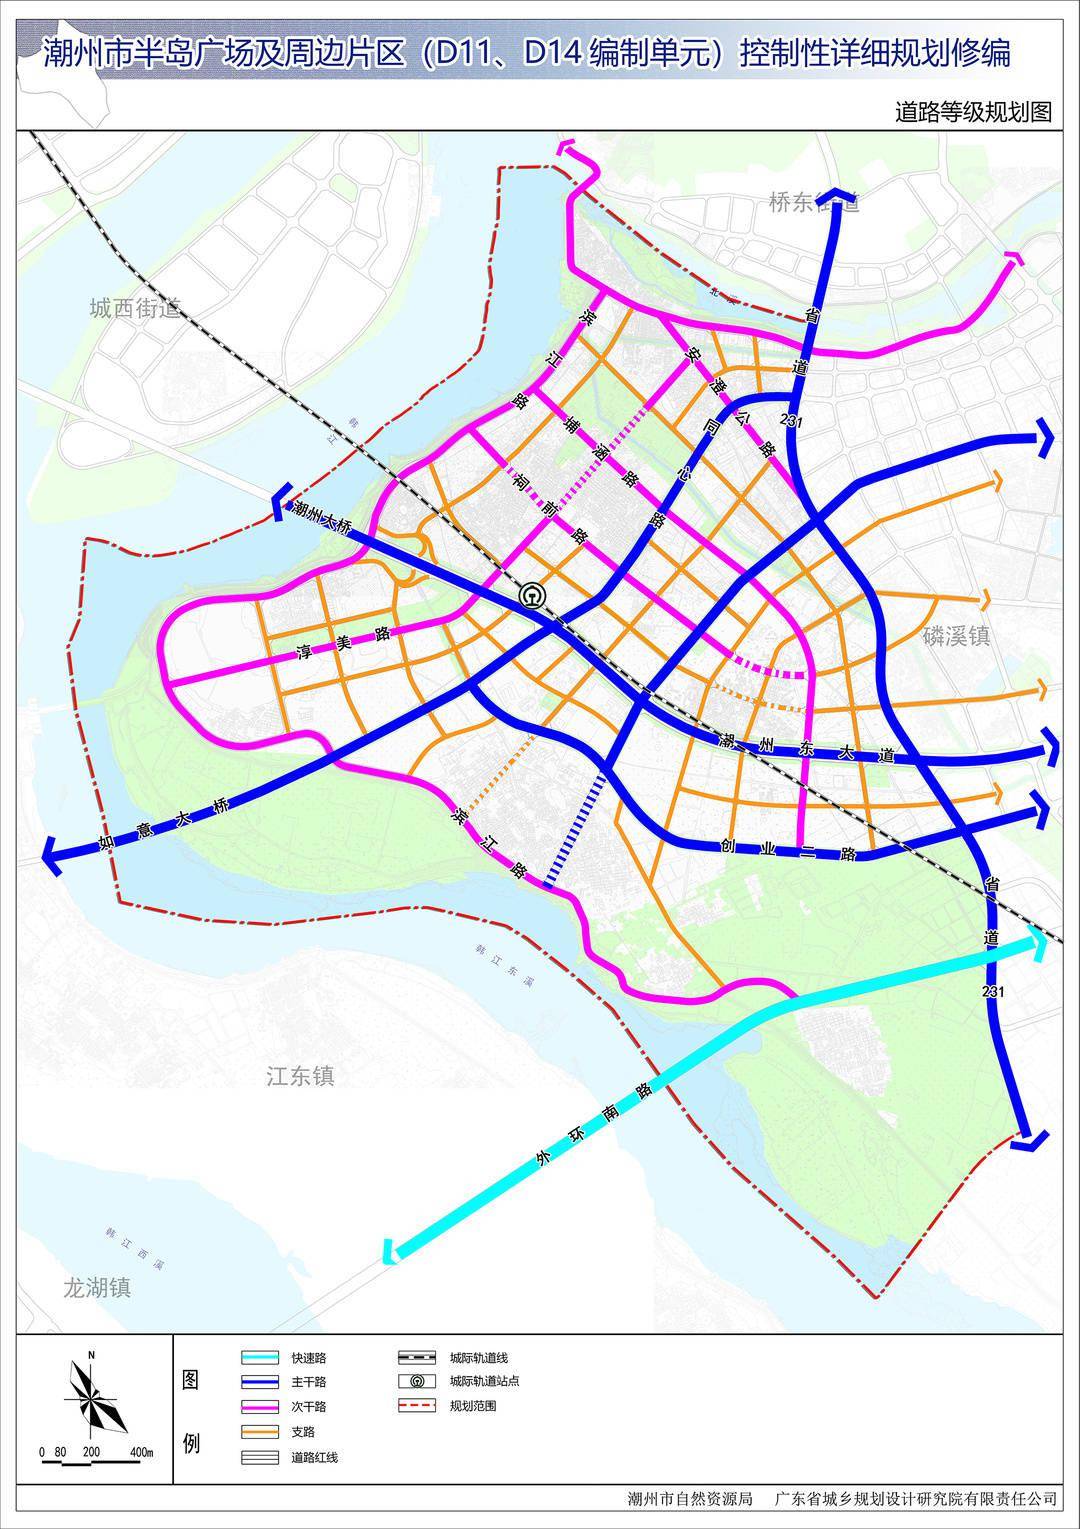 对外道路方面,各个方向的主要道路如下:对外道路系统规划规划落实潮州